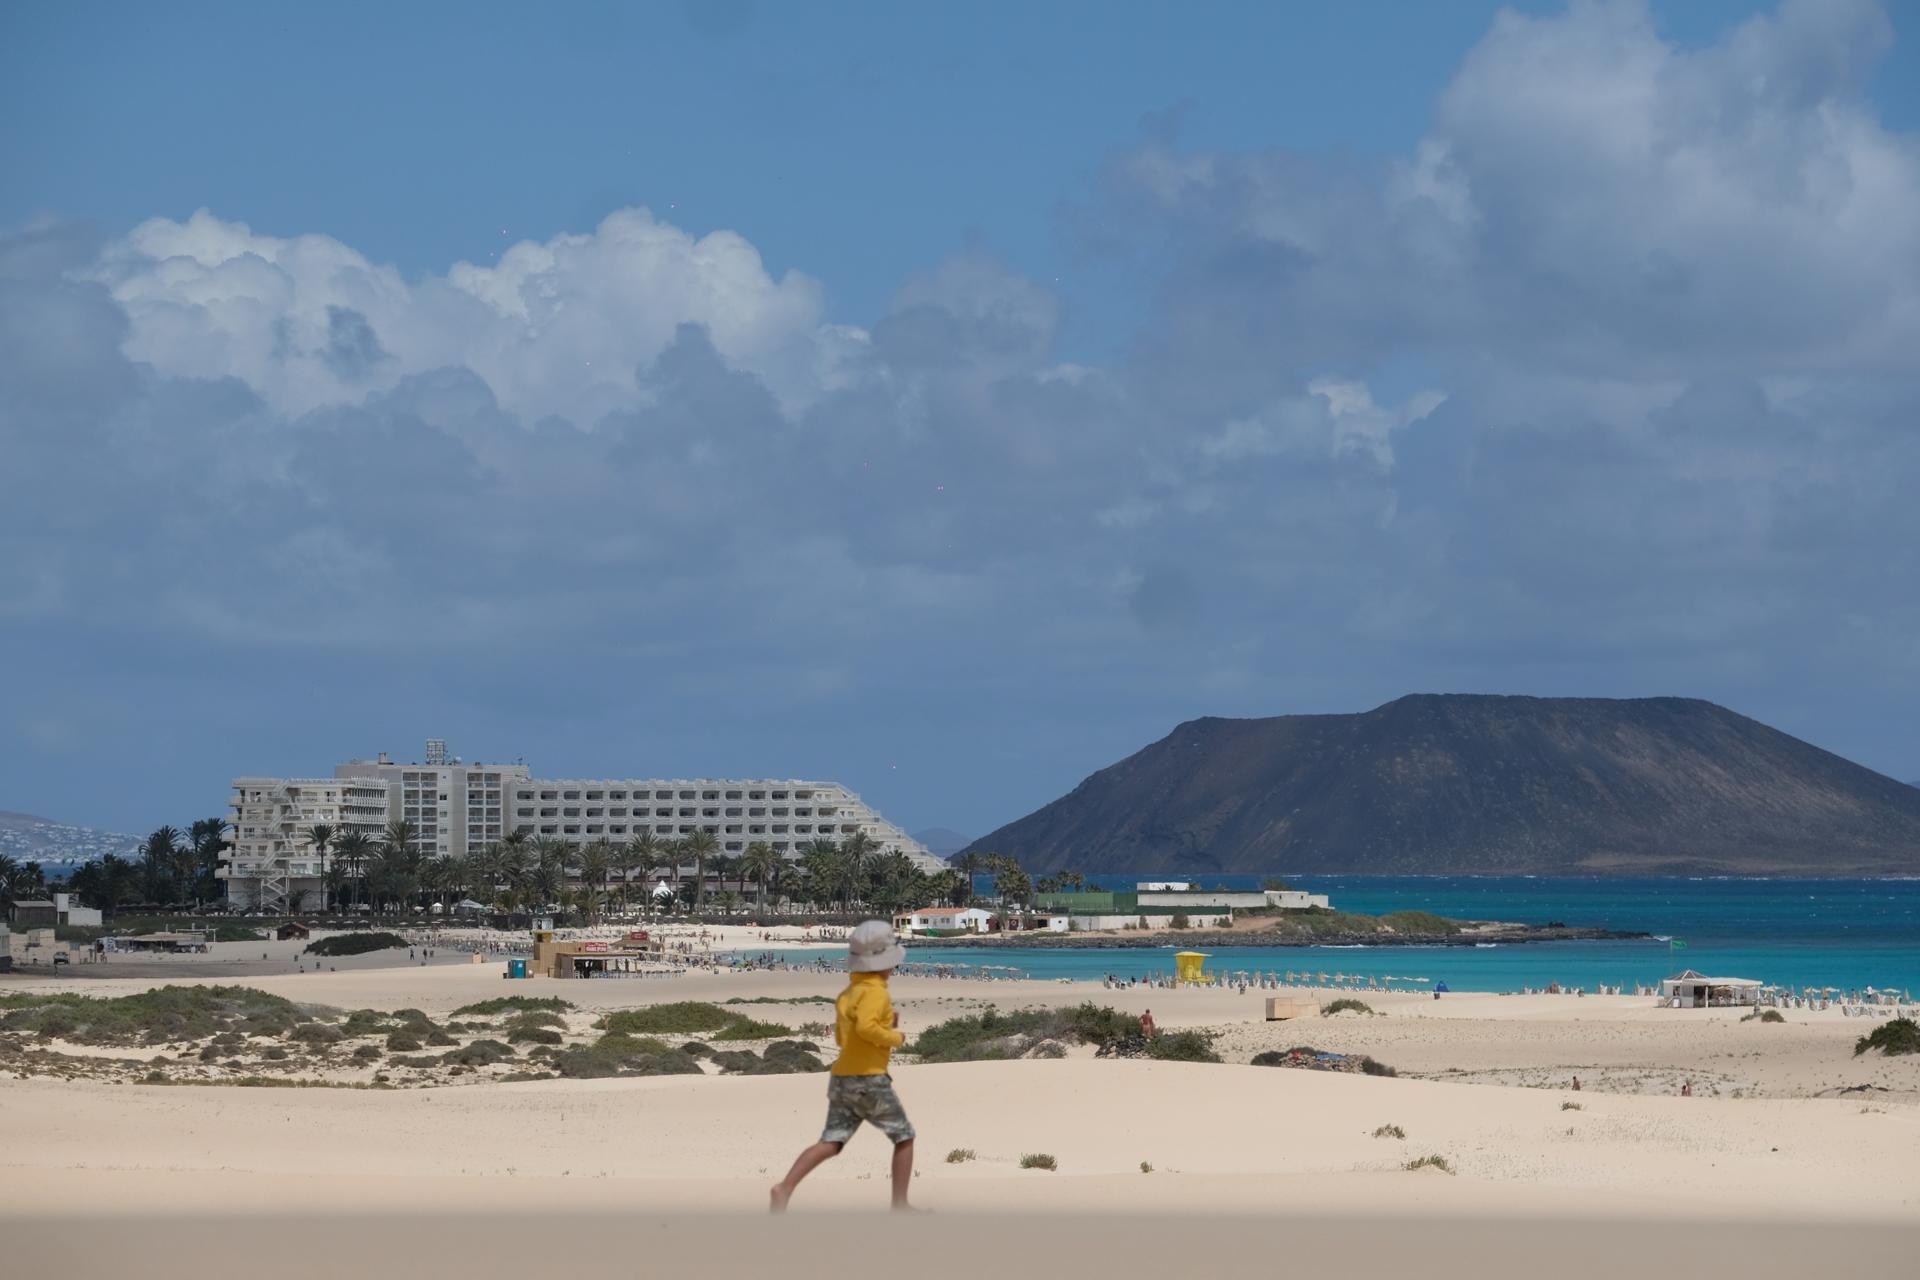 Imagen de archivo de los hoteles de Riu en las dunas de Corralejo (Fuerteventura). EFE/Carlos de Saá